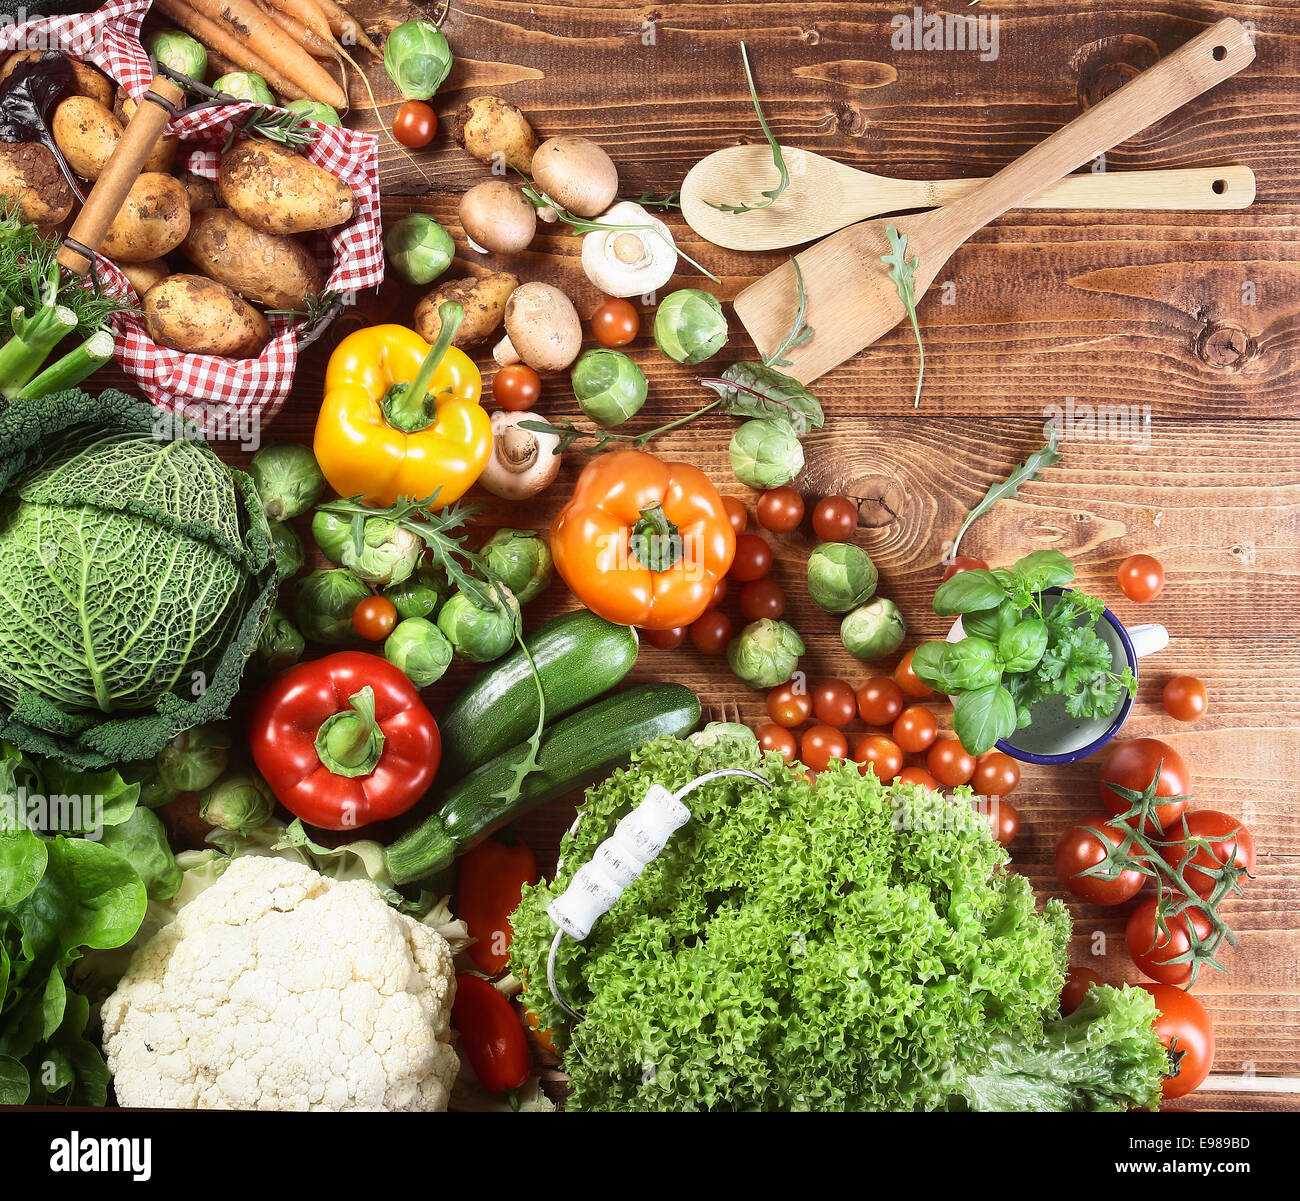 Vue de dessus de toute une gamme d'Herbes et légumes frais de la campagne sur une surface cuisine en bois prêt à être utilisés comme ingrédients dans la cuisine végétarienne Banque D'Images